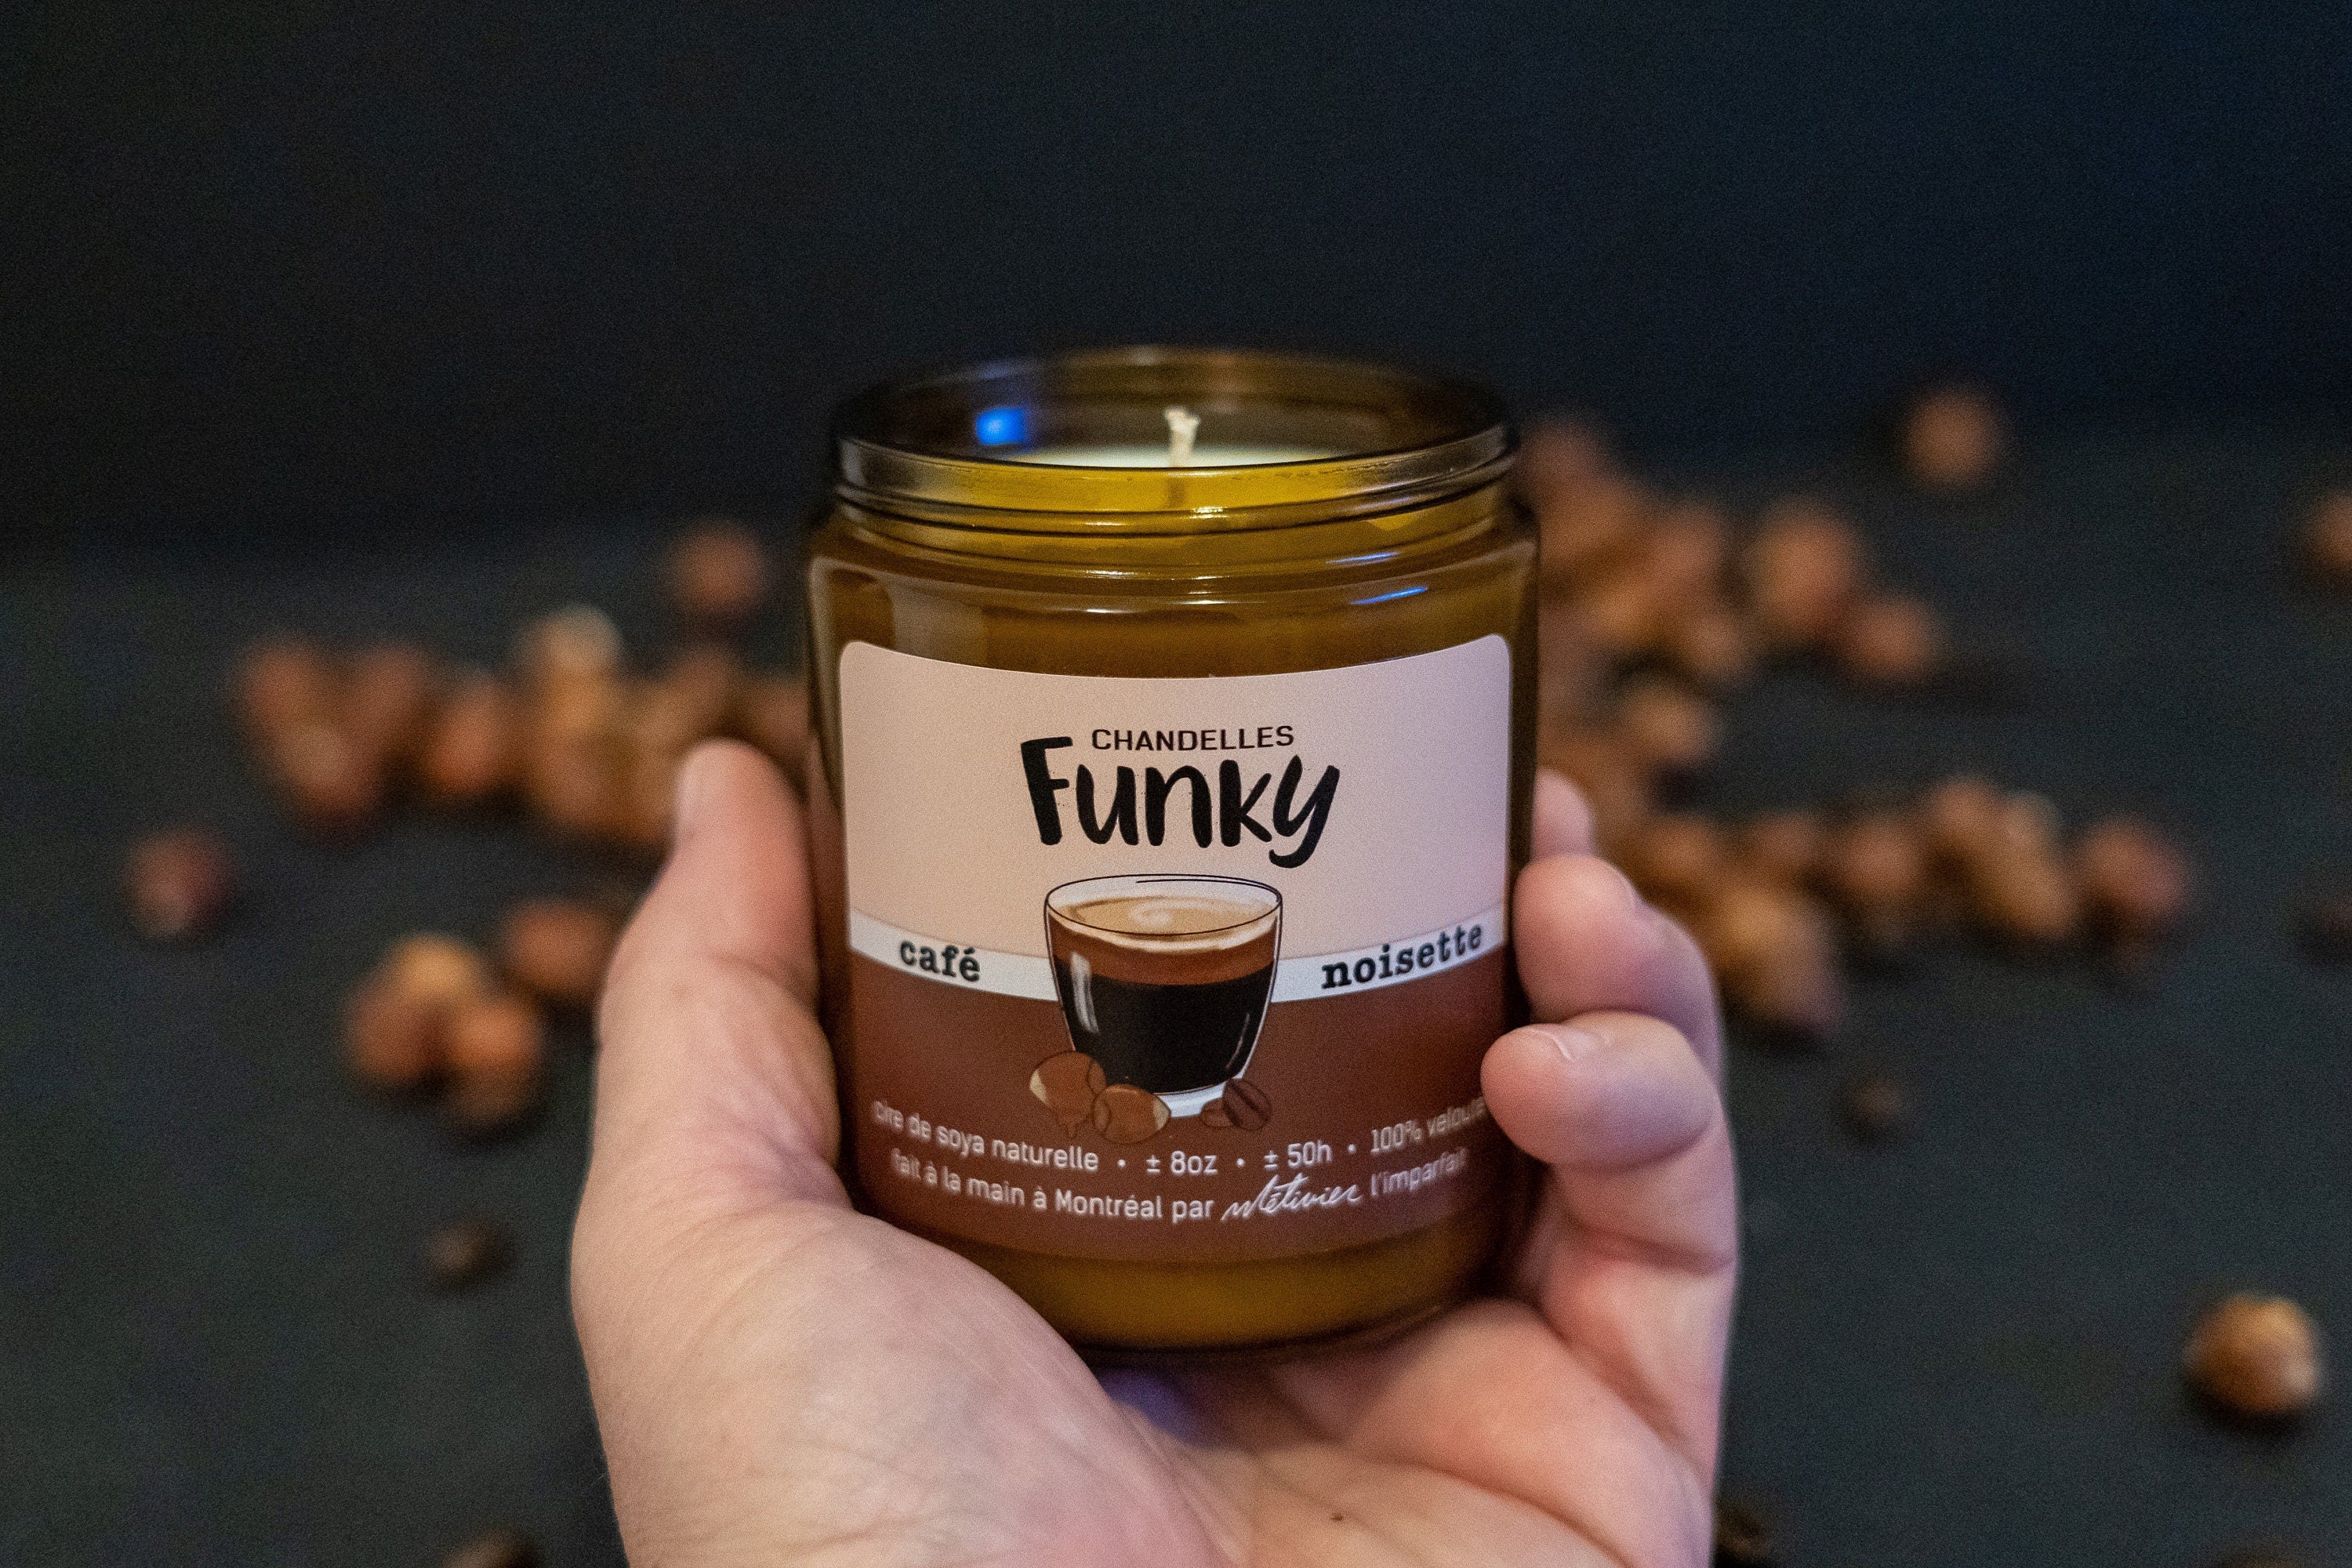 Chandelle Café noisette - Funky – Funky & Co.